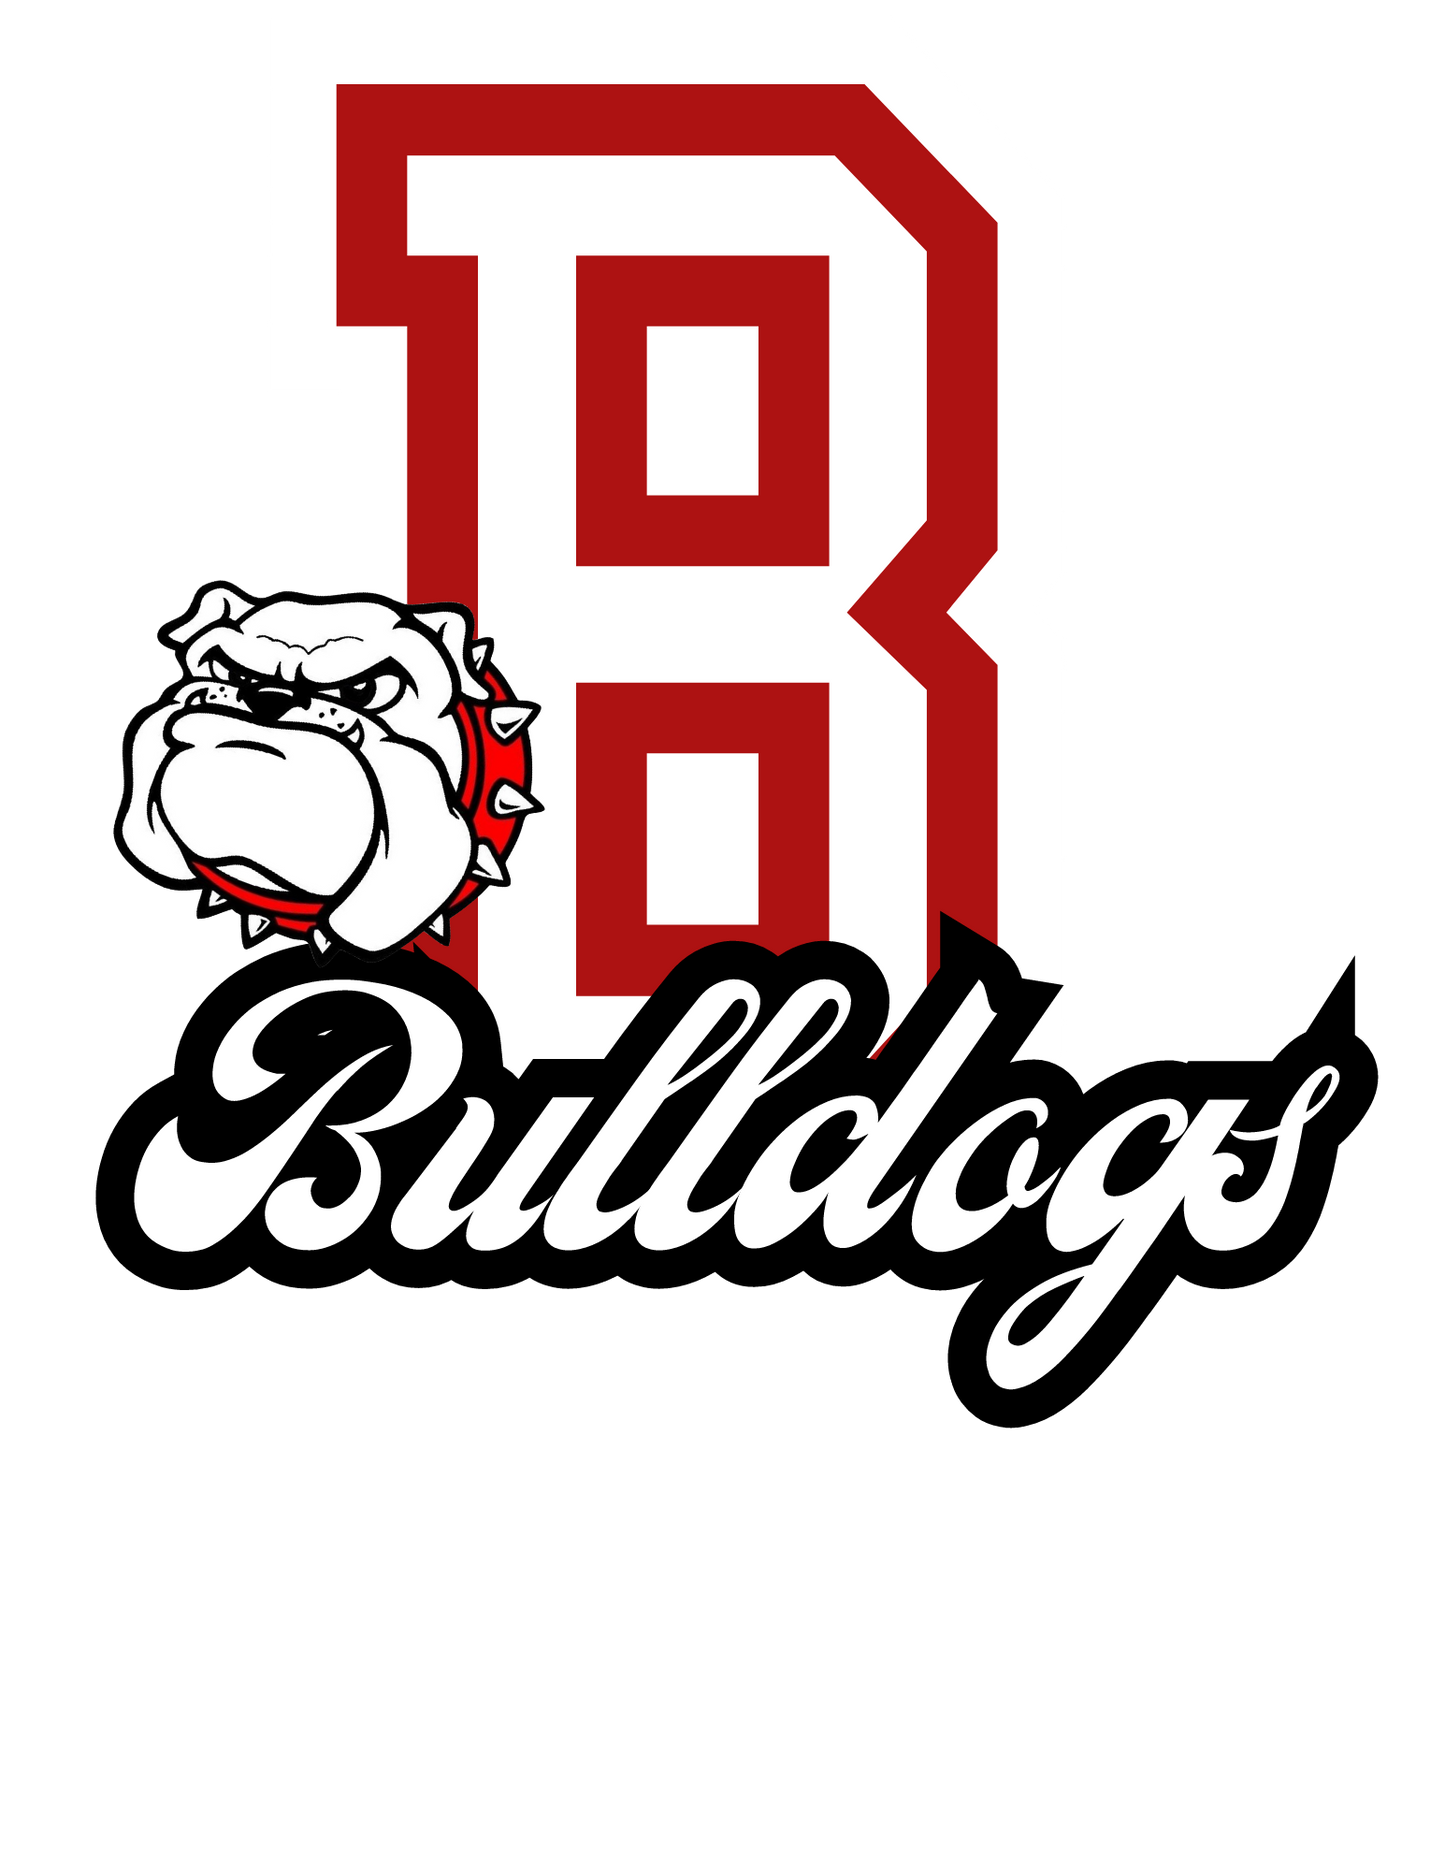 Big B Bulldogs & Logo